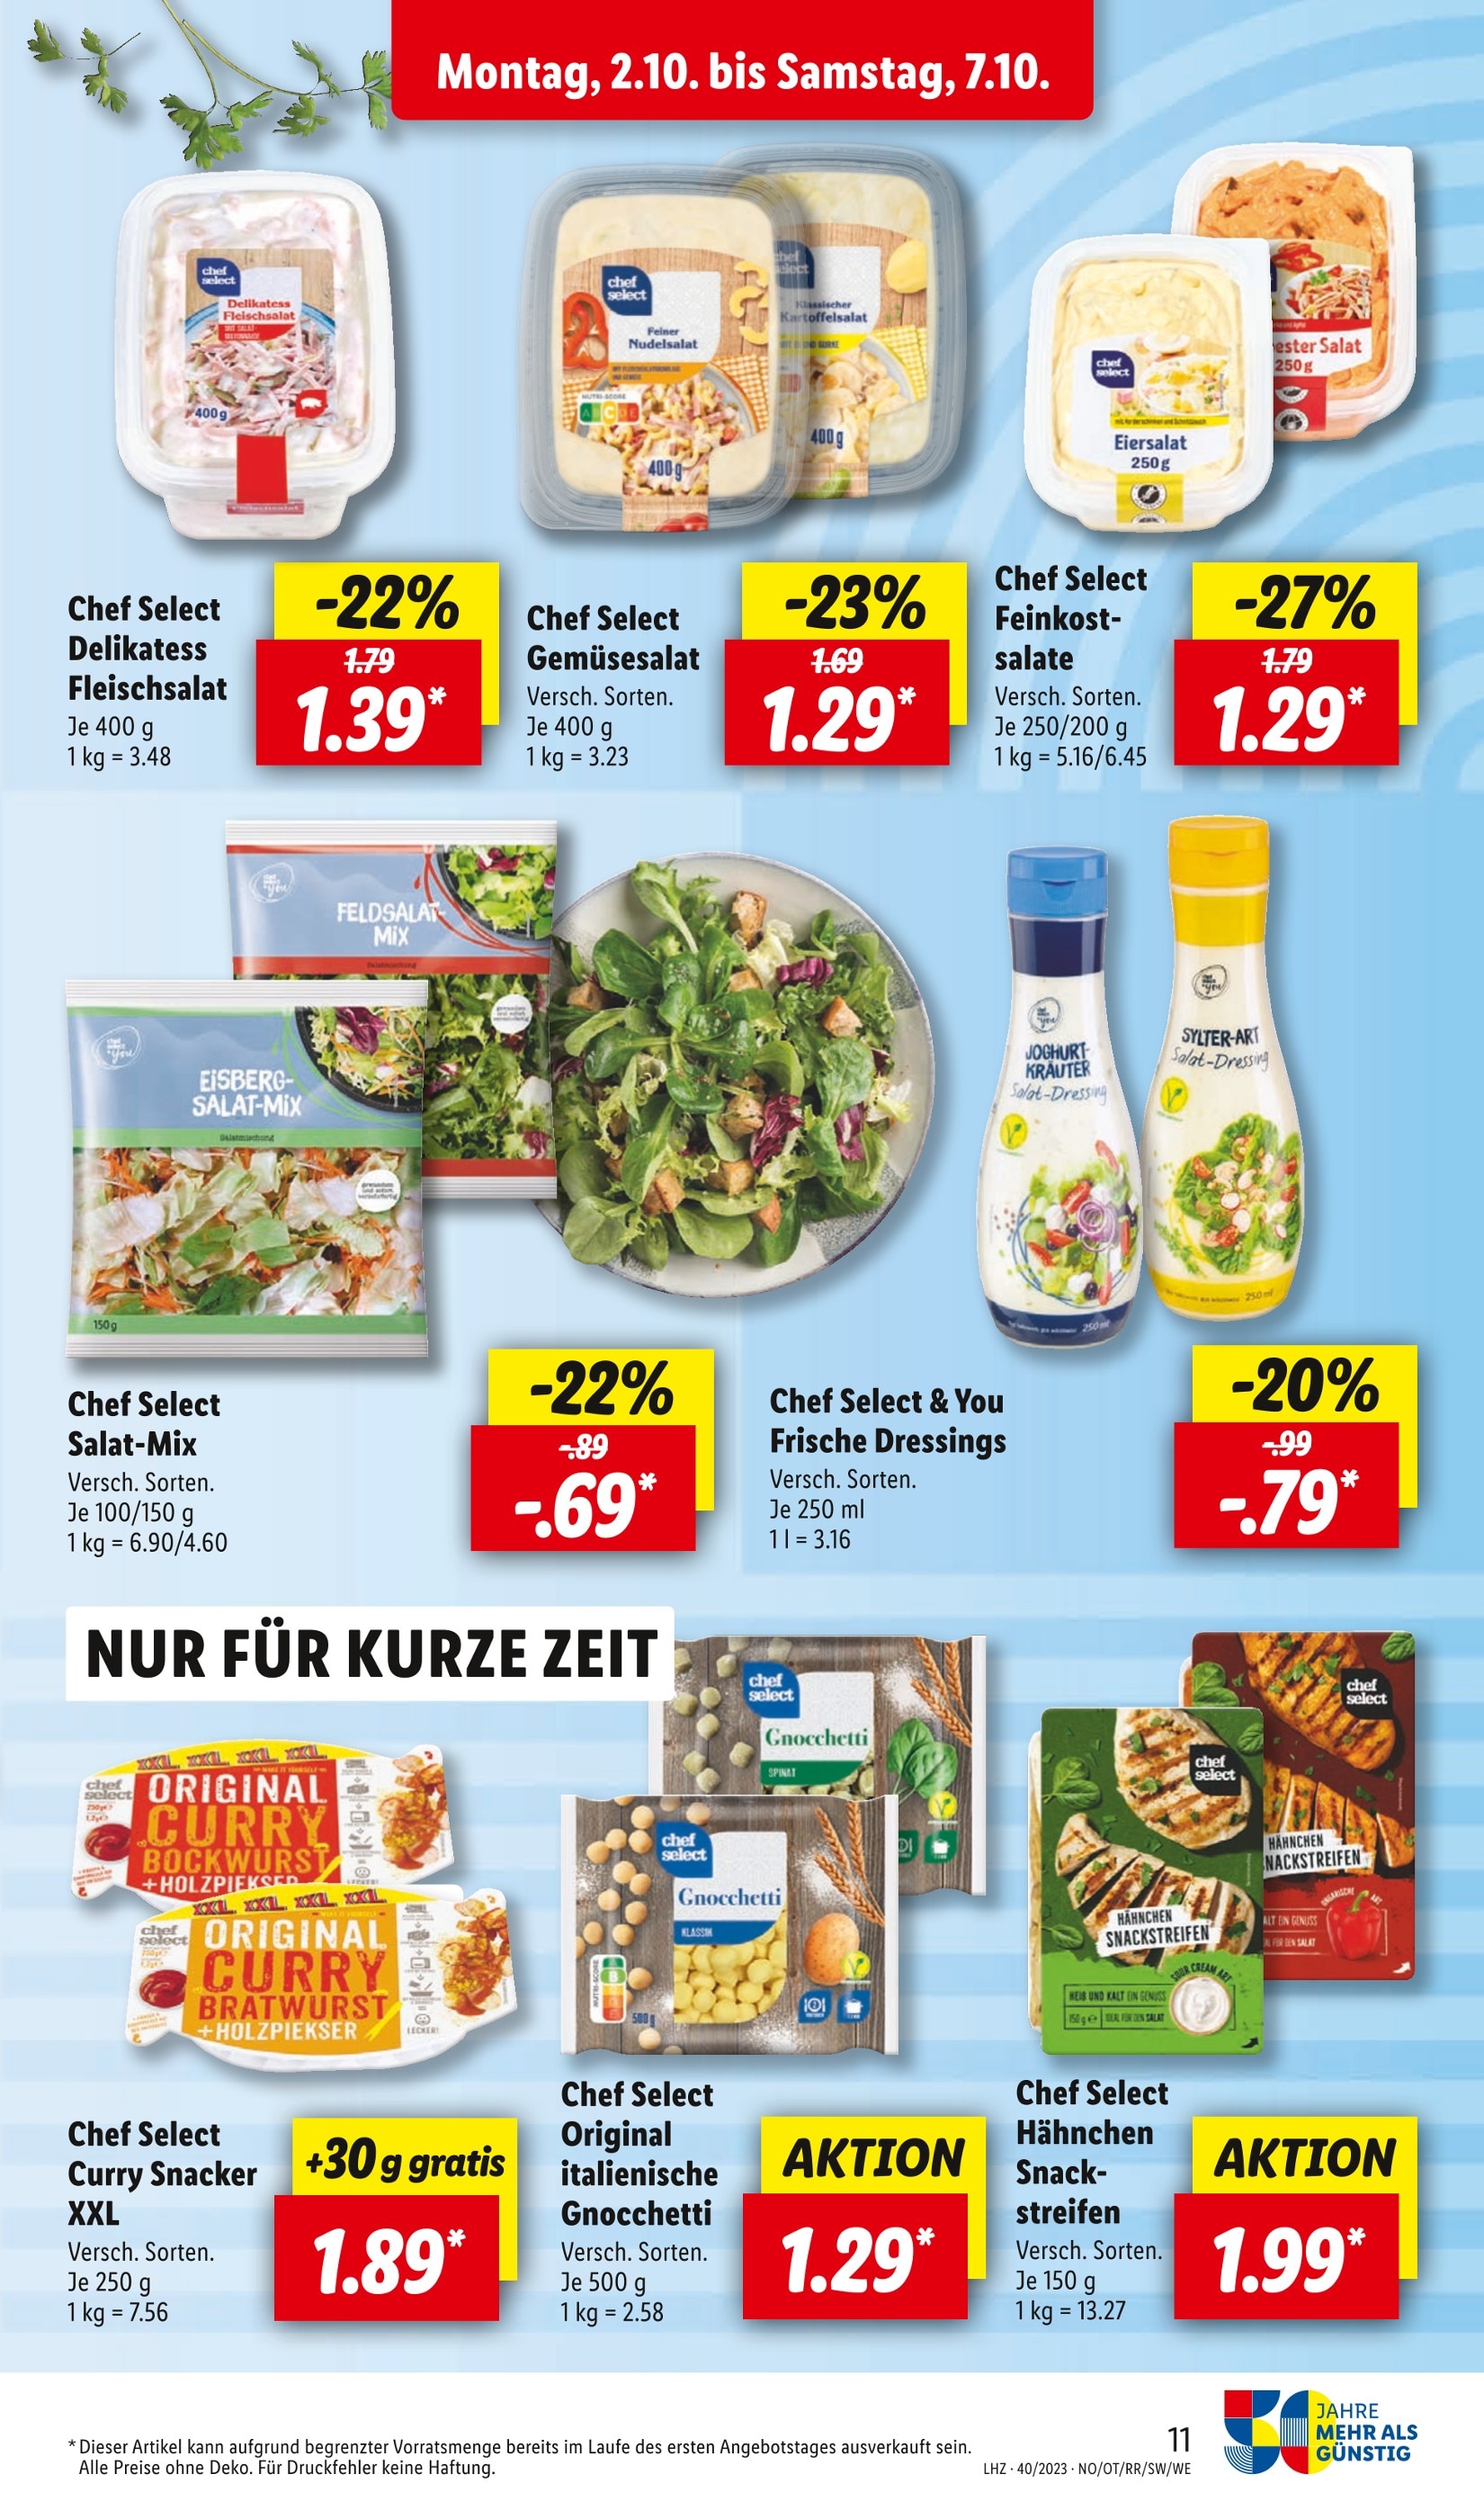 Kartoffelsalat kaufen in Heidelberg - günstige Angebote in Heidelberg